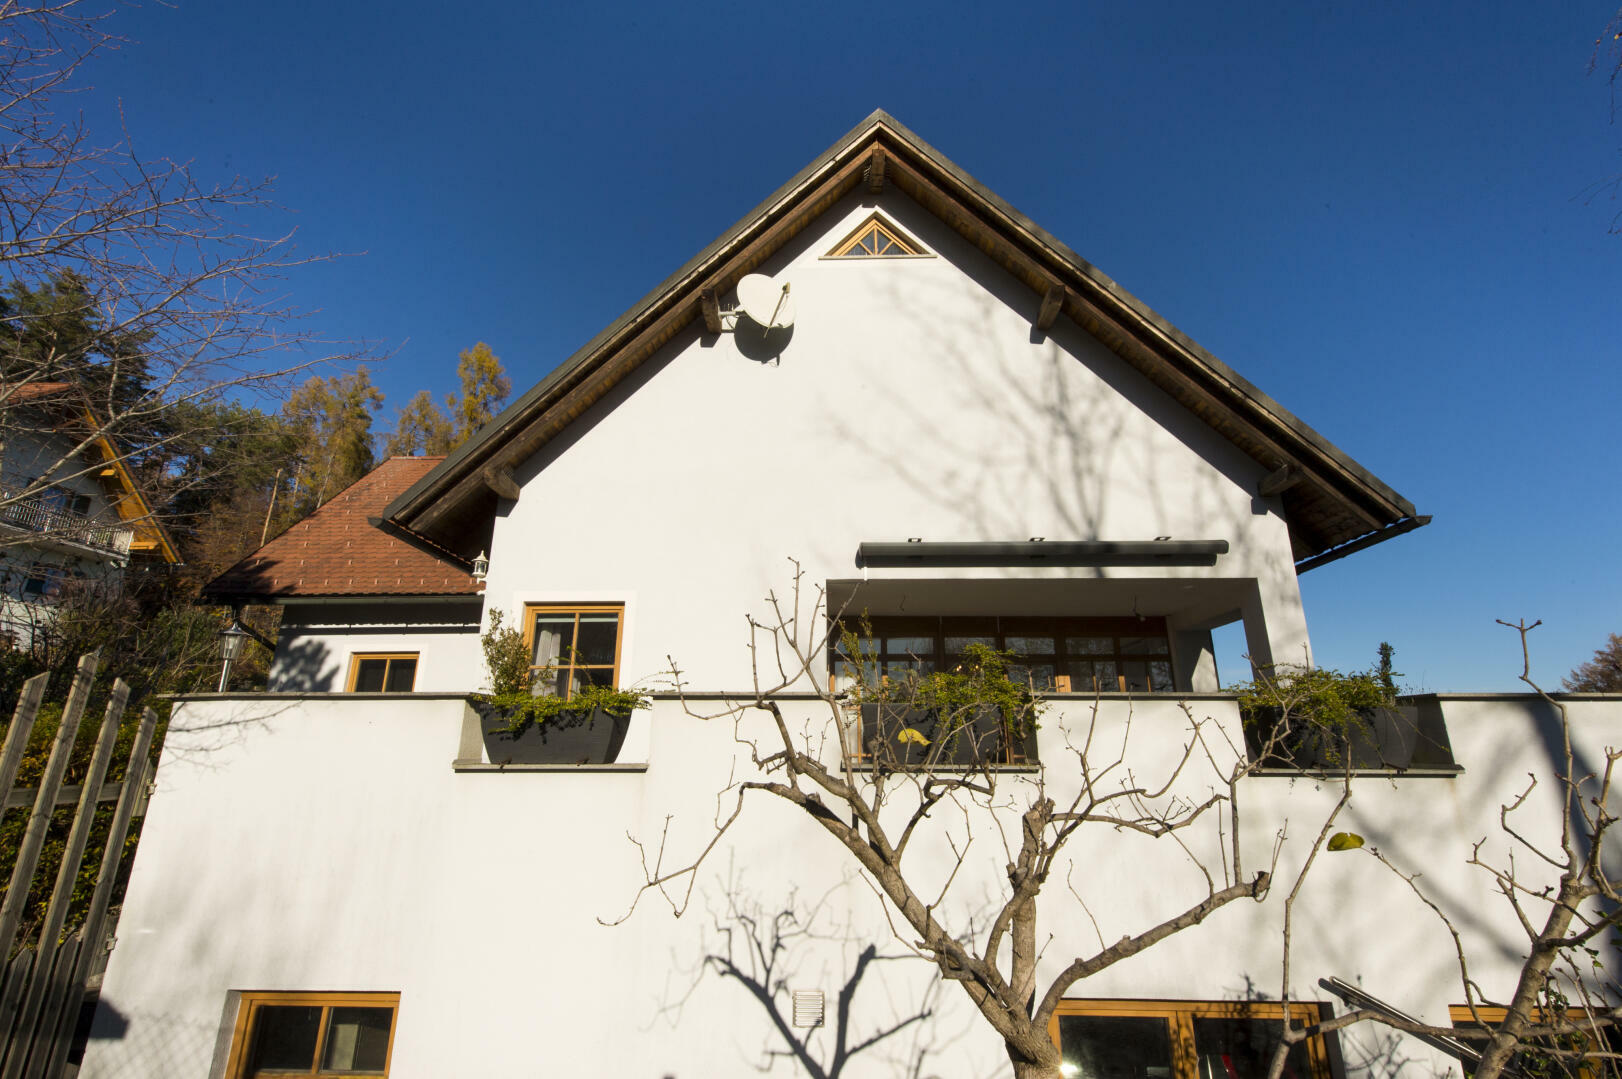 Haus zu kaufen: Kogelbuch 6, 8302 Nestelbach bei Graz - Einfamilienhaus Graz Umgebung  2